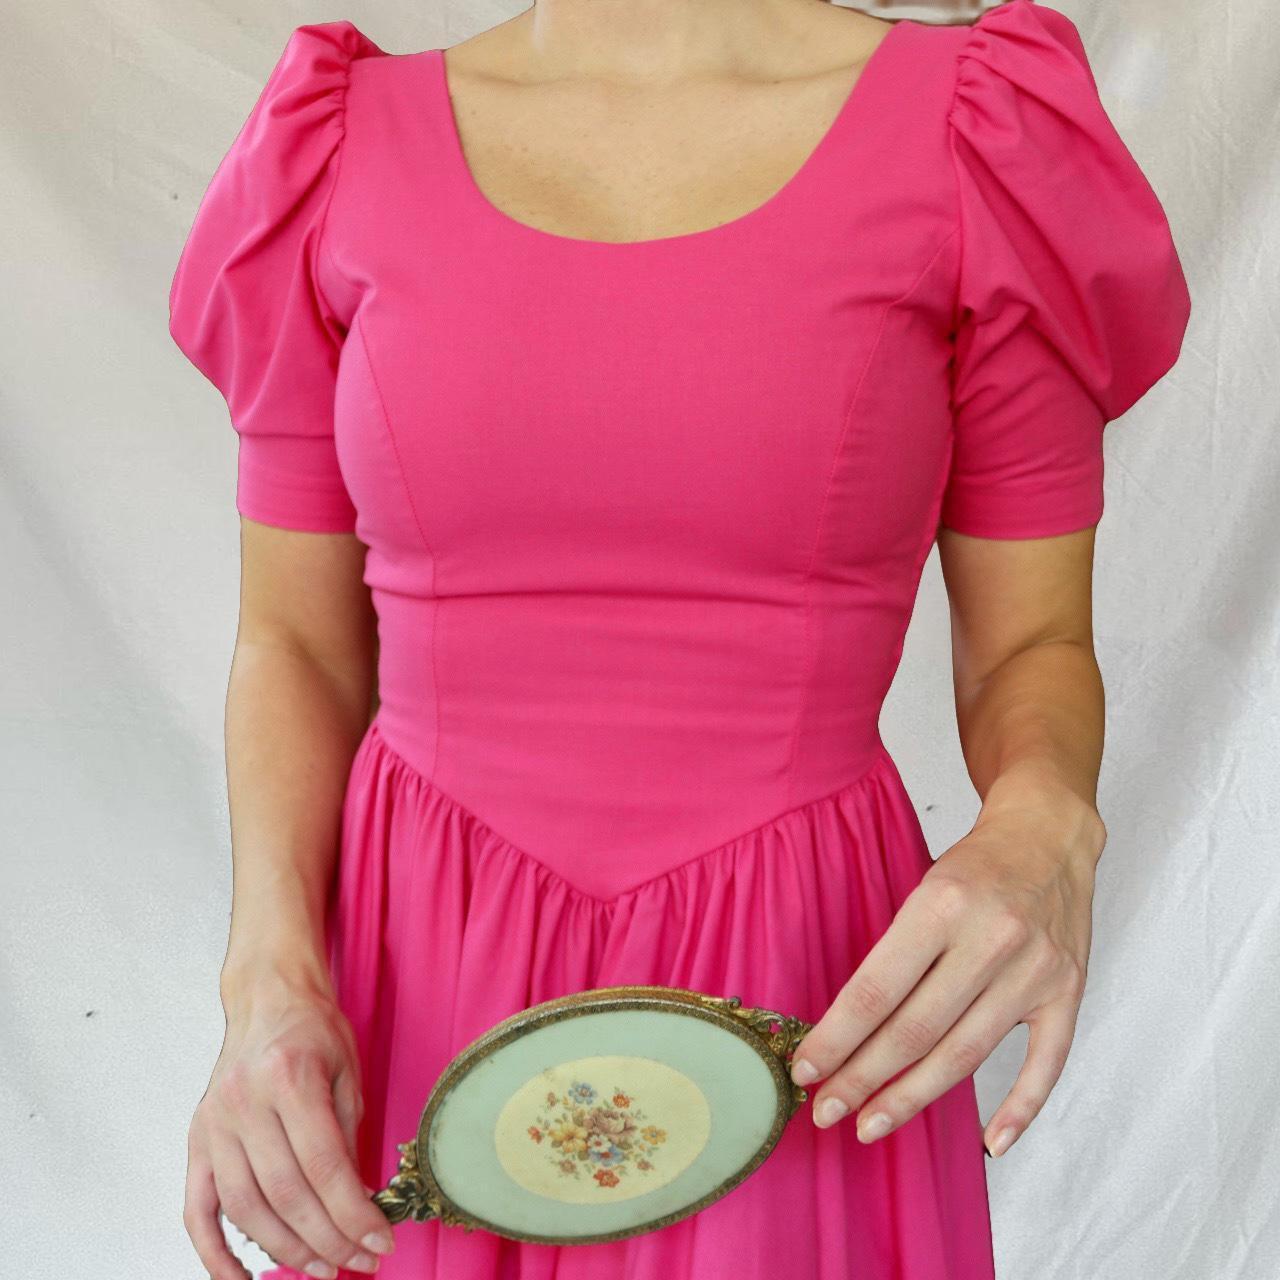 Vintage 1980's Hot Pink Laura Ashley Dress Short... - Depop